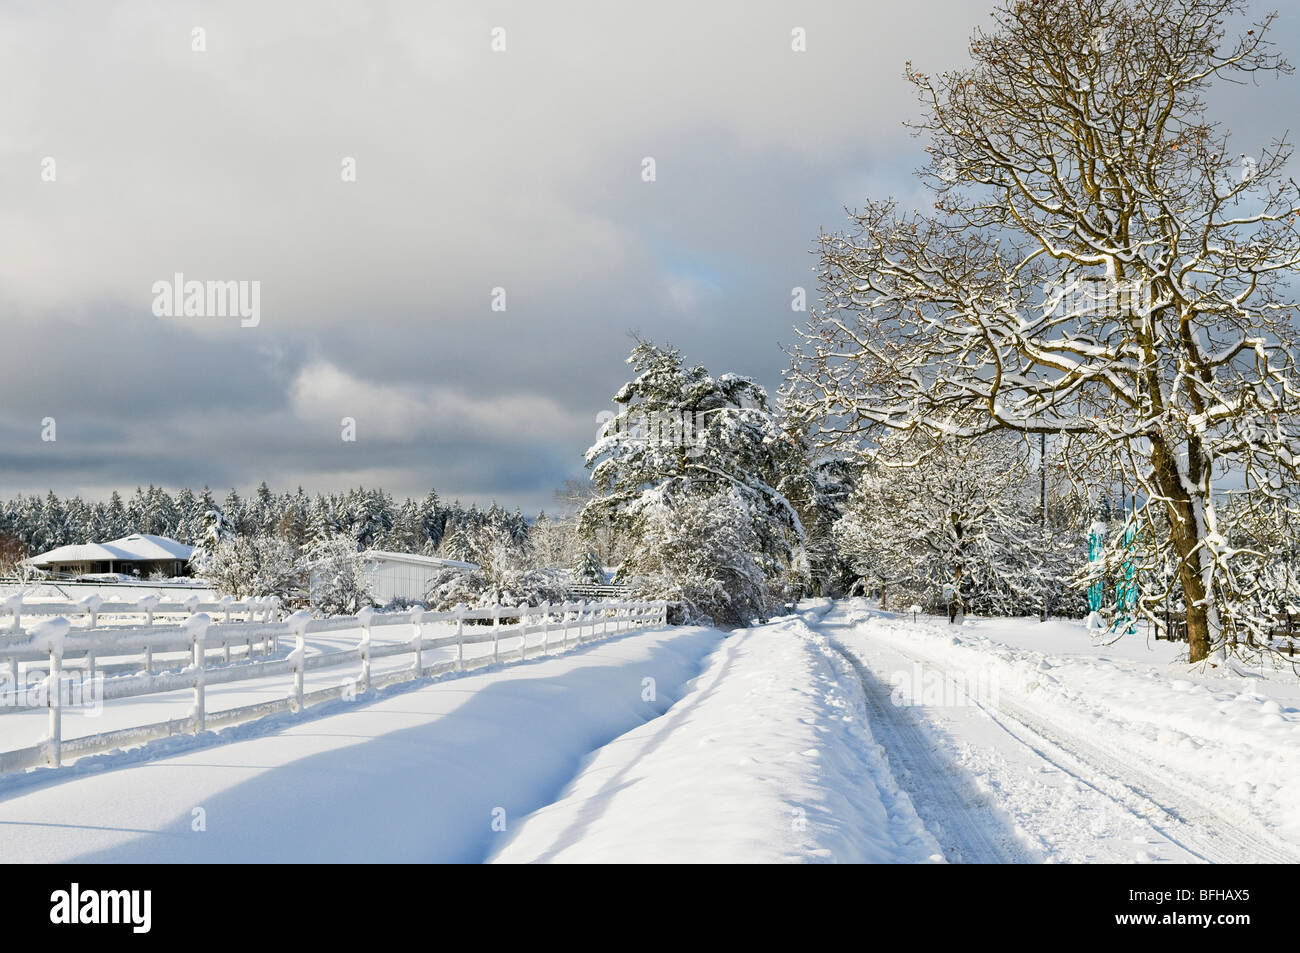 Hiver neige profonde couvre ce chemin rural dans la région de Central Saanich, près de Victoria (Colombie-Britannique). Banque D'Images